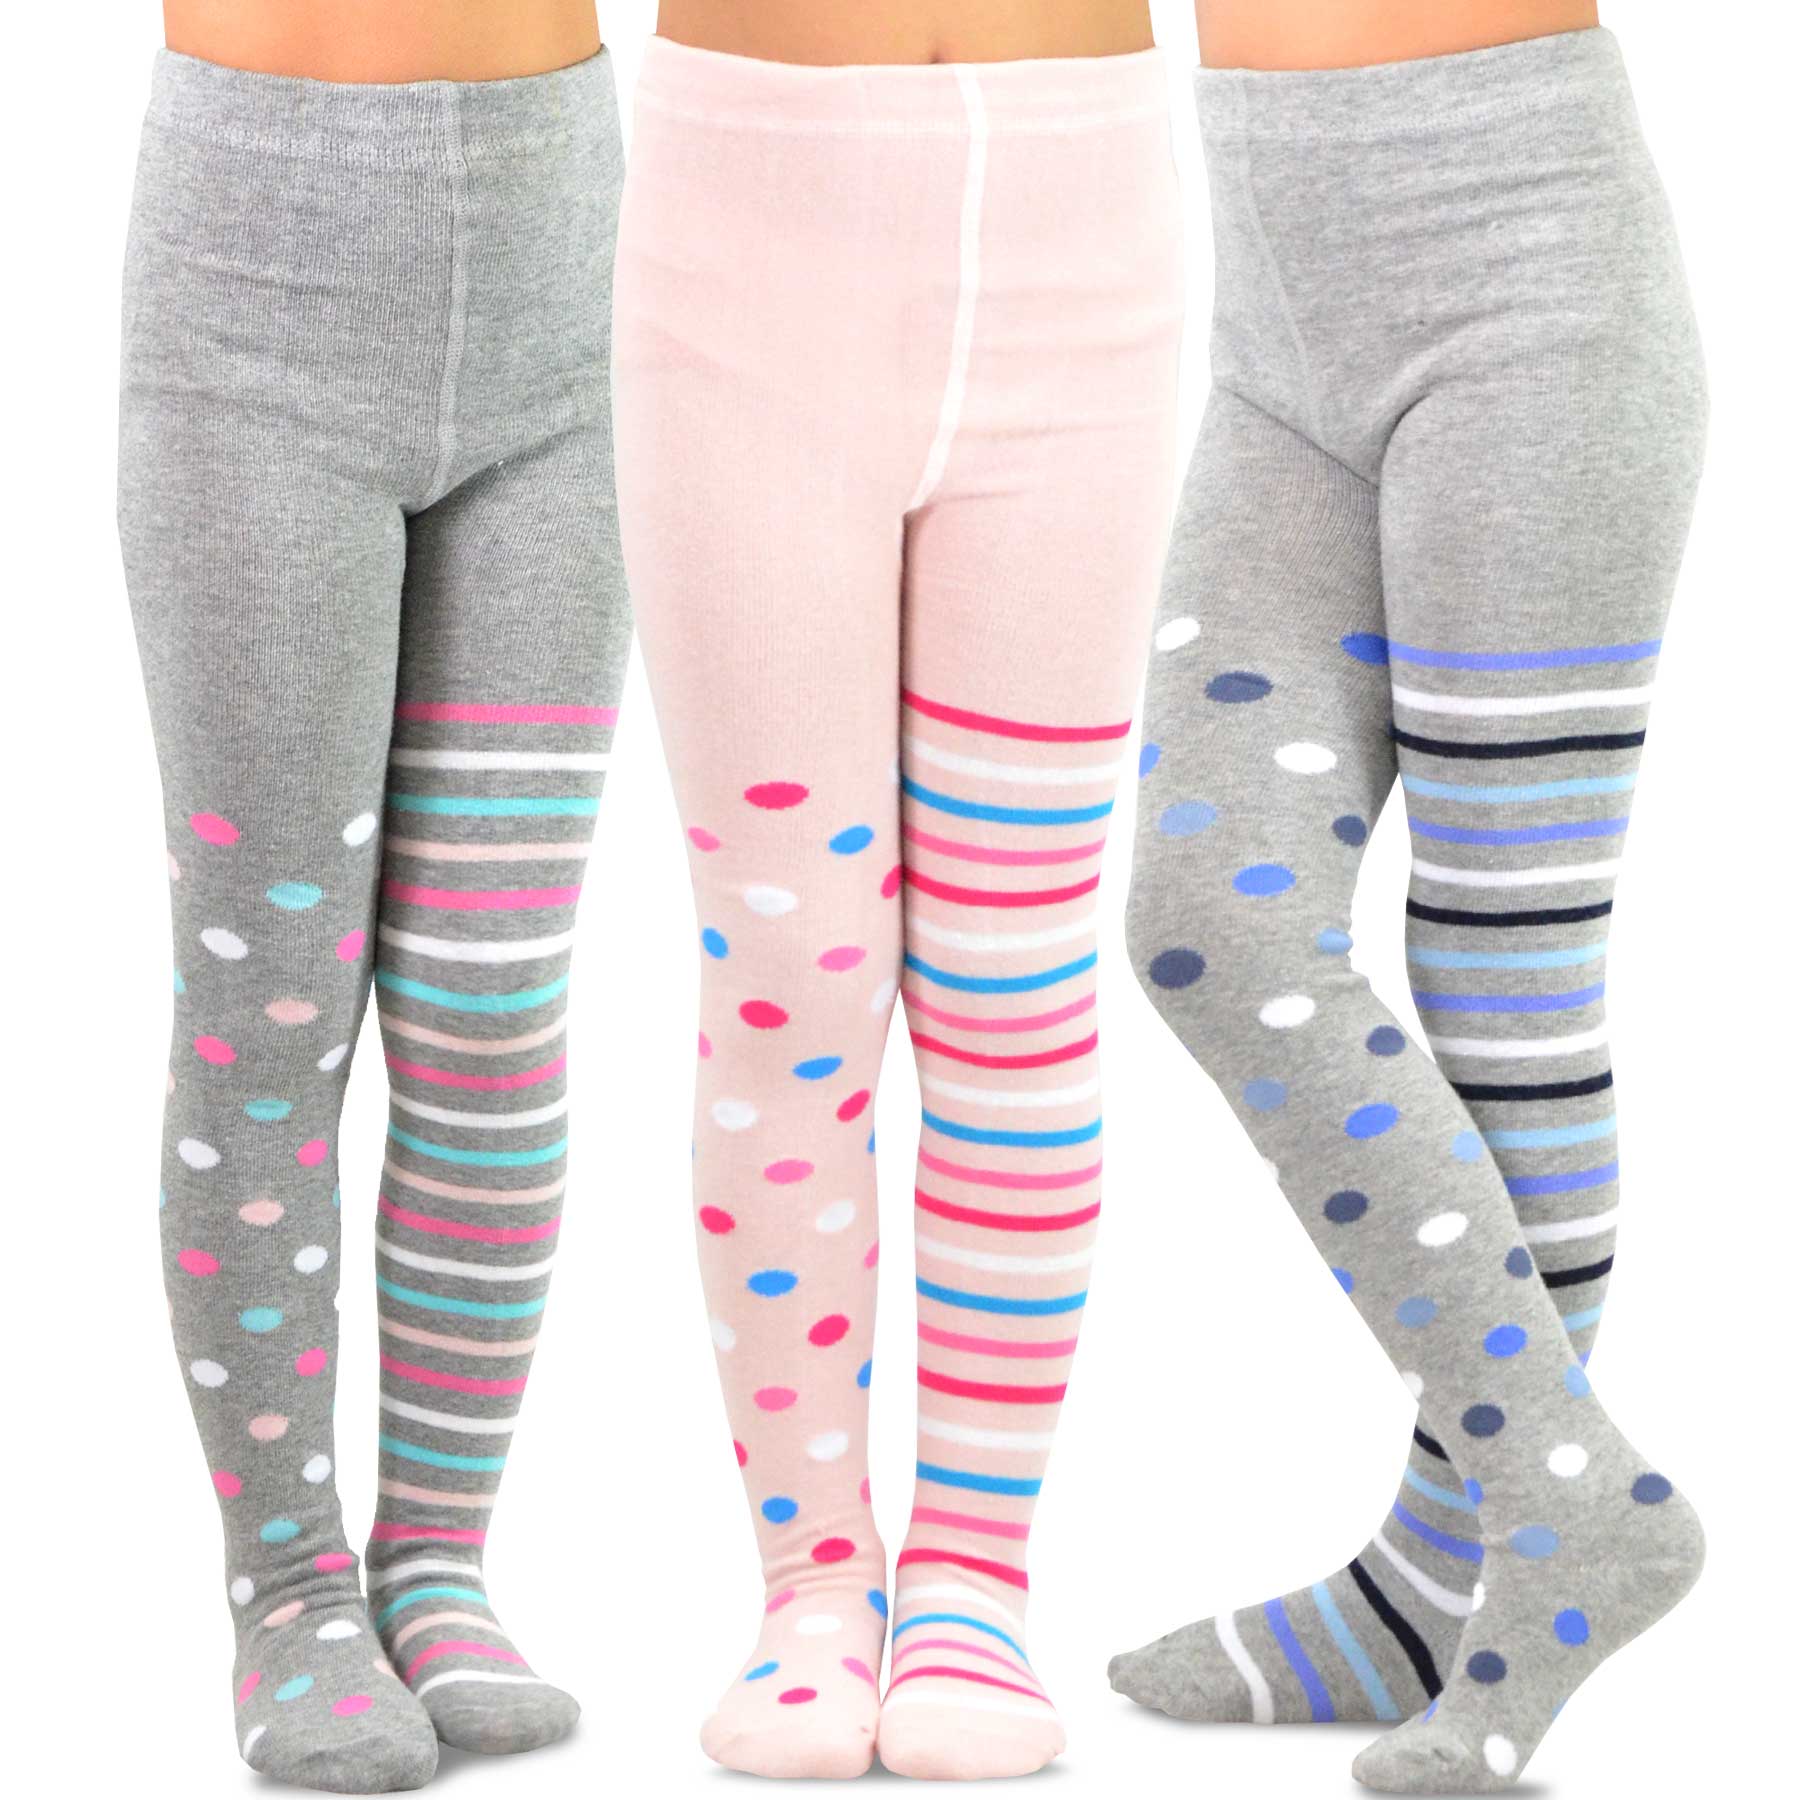 TeeHee Socks Kid's Casual Microfiber Tights Pink 3-Pack (T1609)